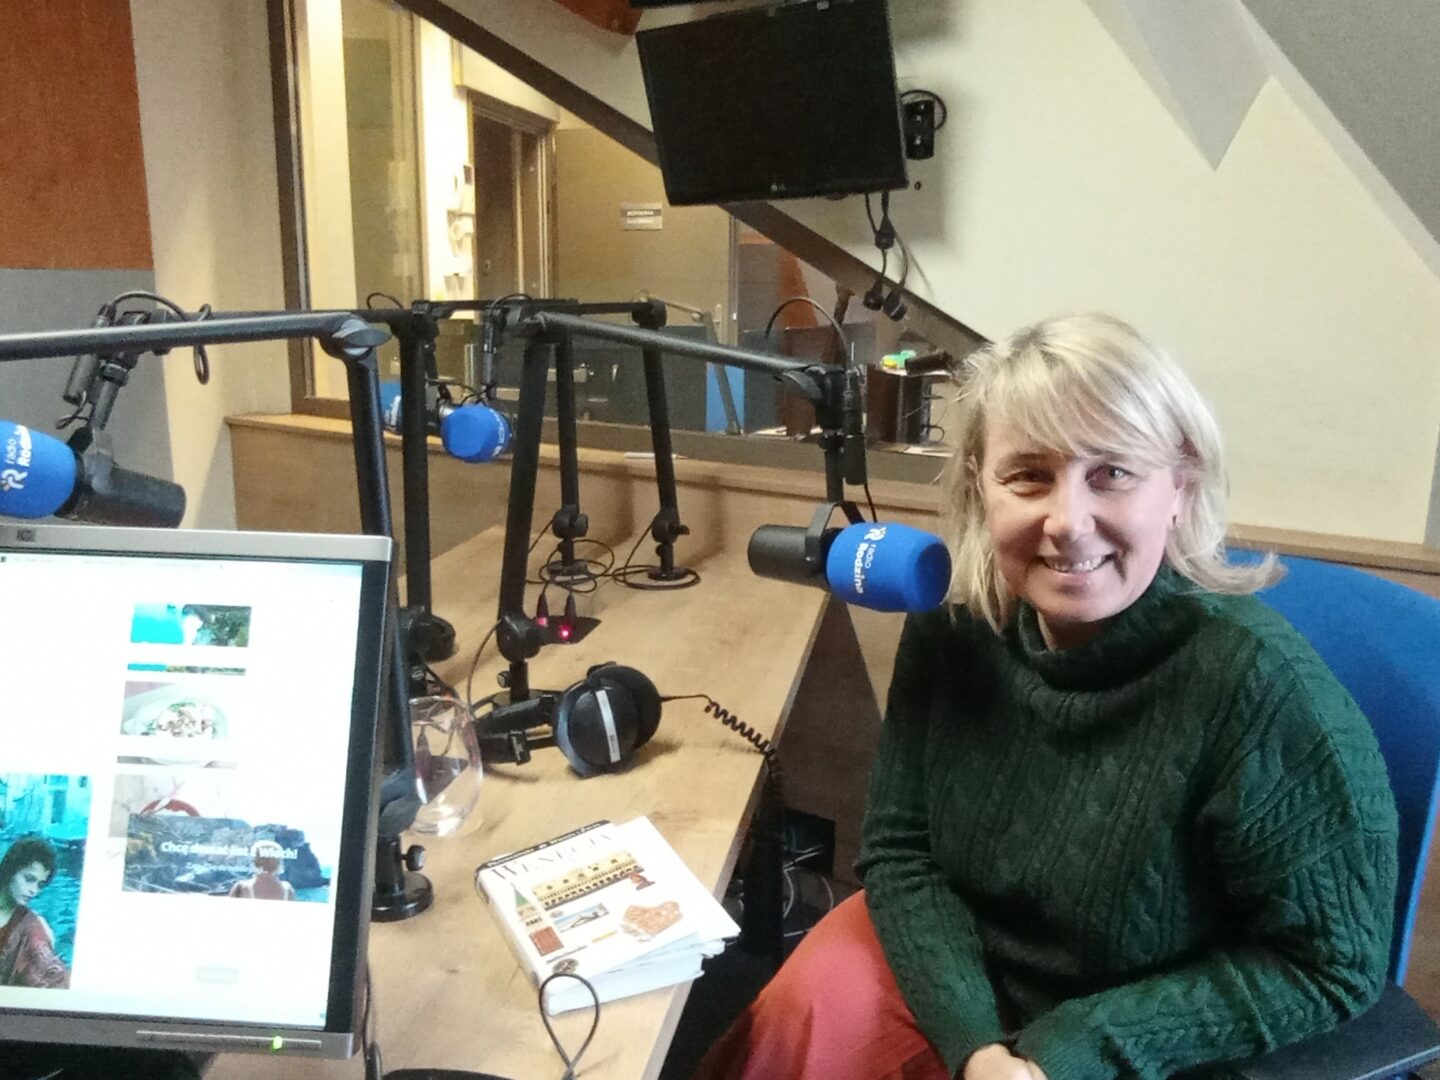 fot. Radio Rodzina: Agnieszka Kulbida, biuro podroży Camino z Wrocławia